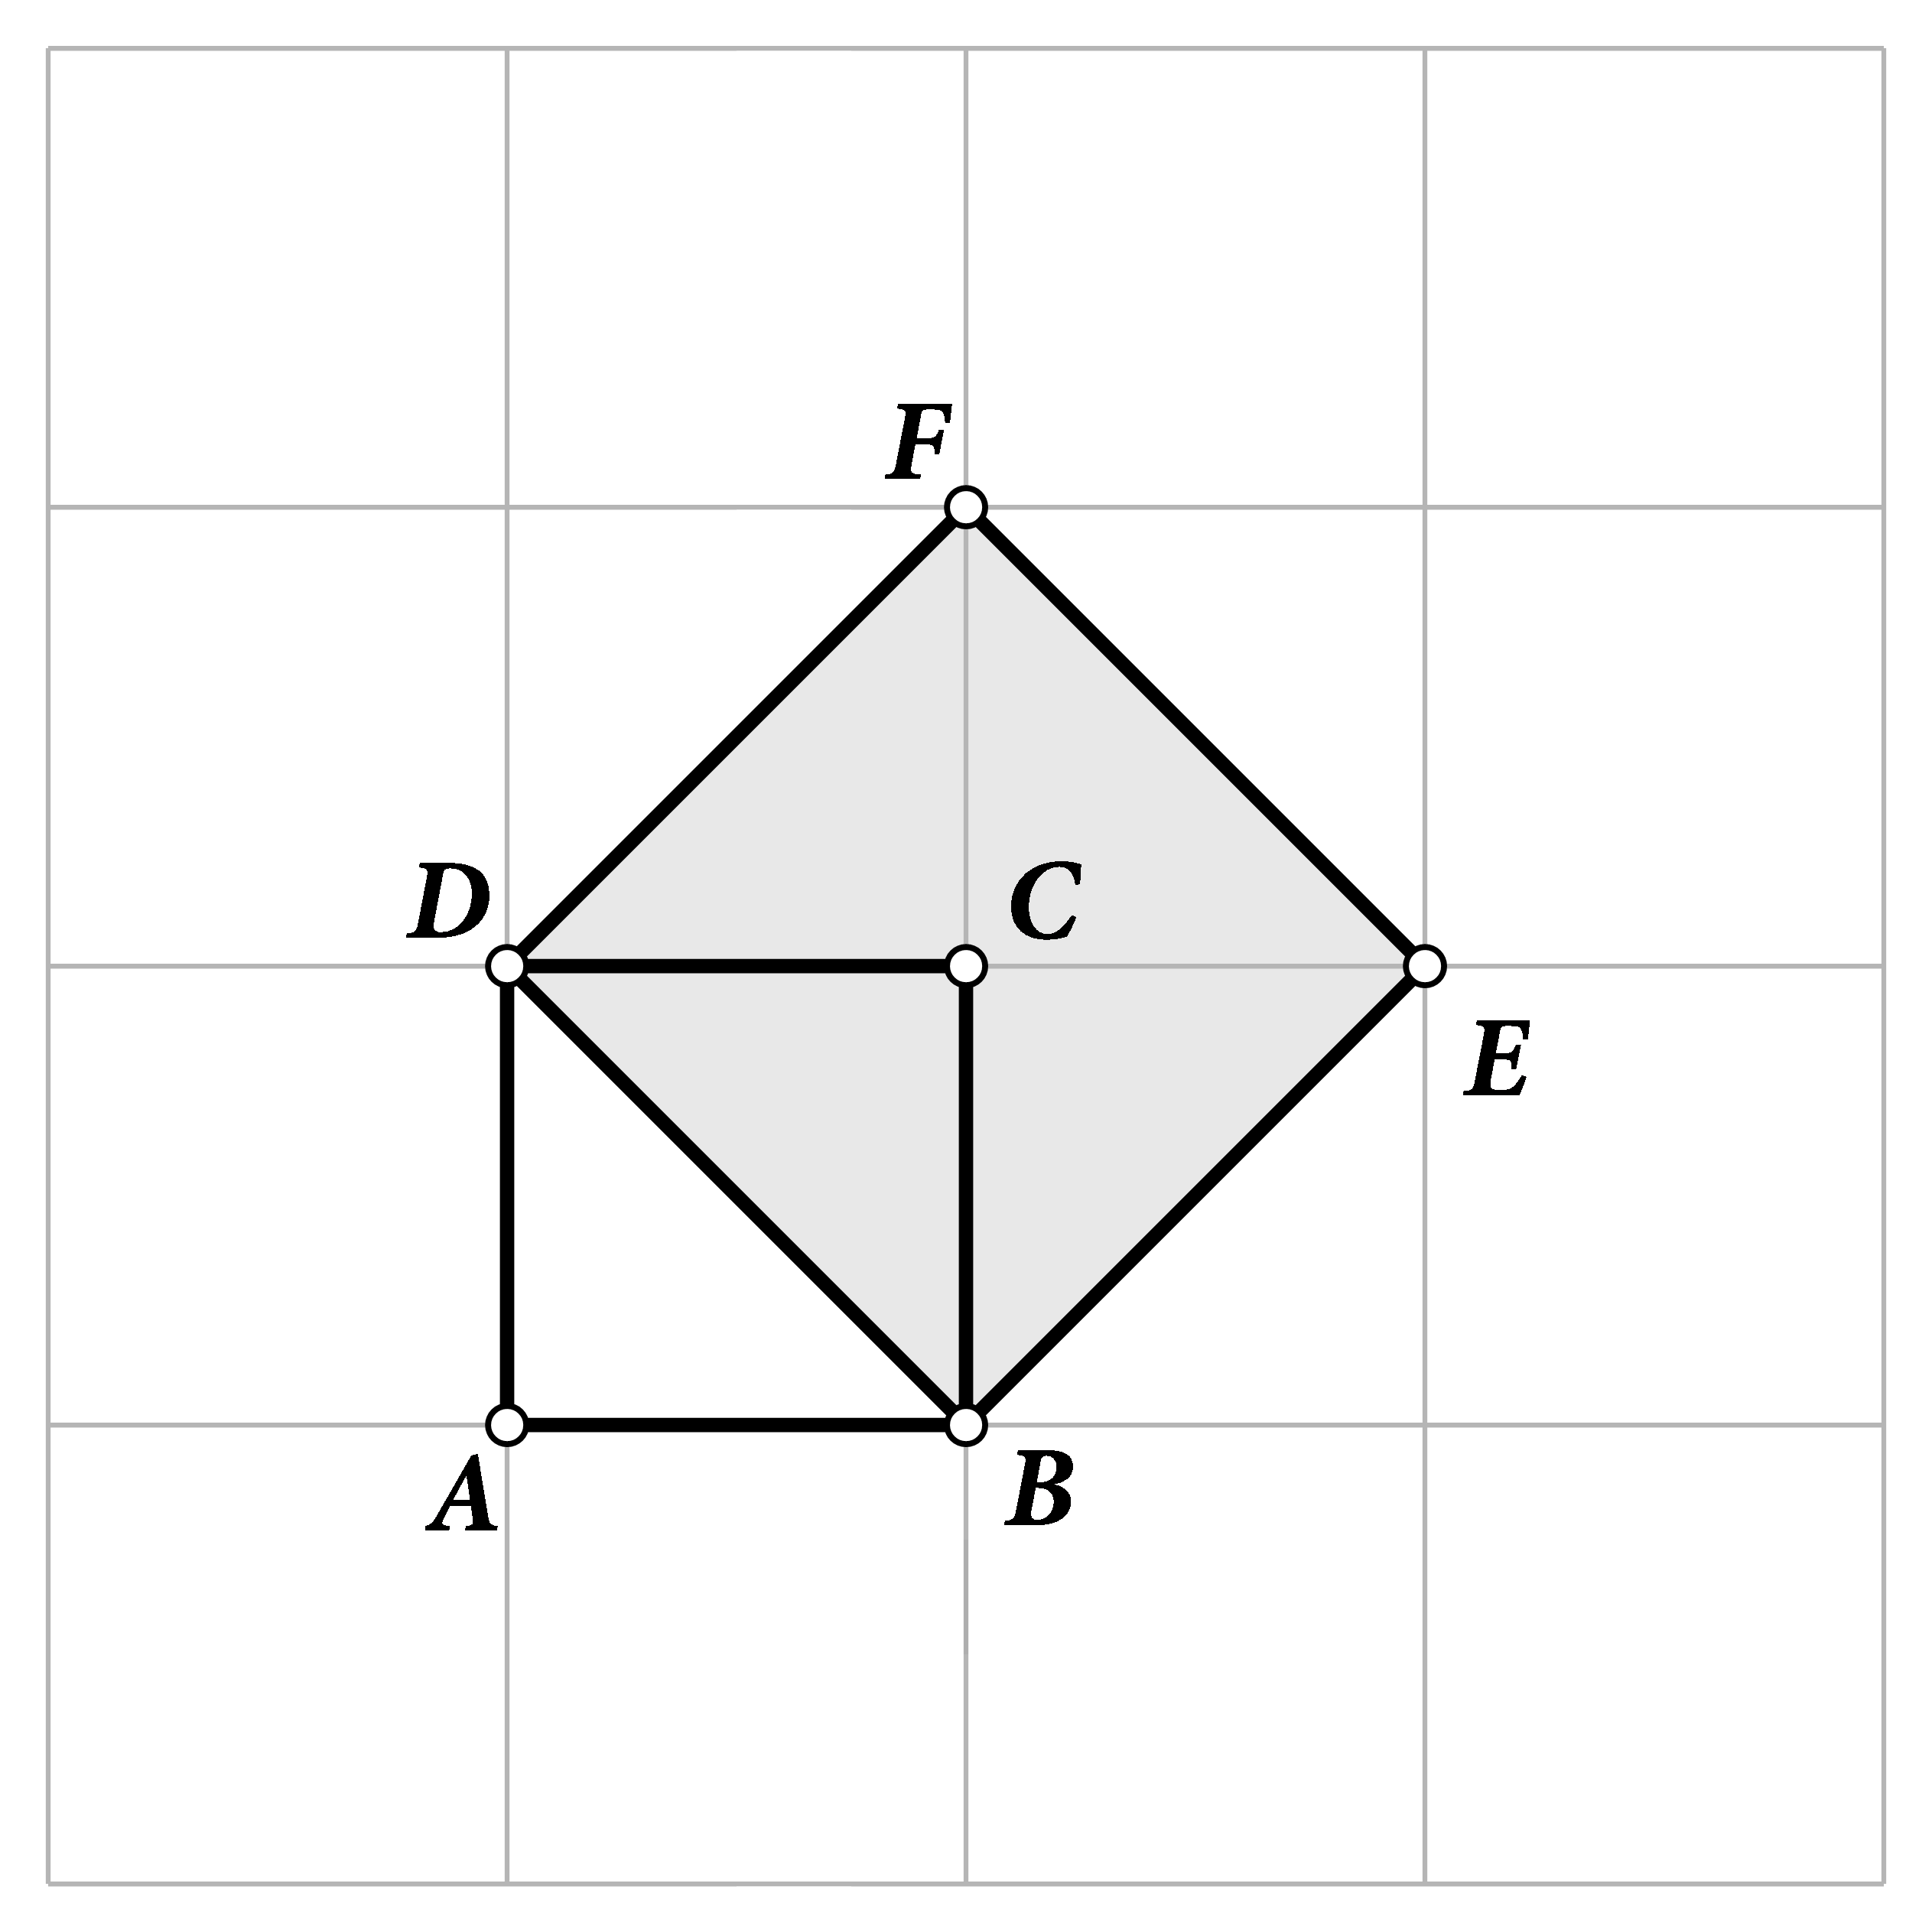 Slika prikazuje kvadrat ABCD nacrtan u mreži kvadratića i kvadrat BEFD čija je stranica dijagonala kvadrata ABCD. Određuje se omjer površina nacrtanih kvadrata i omjer duljina njihovih stranica.